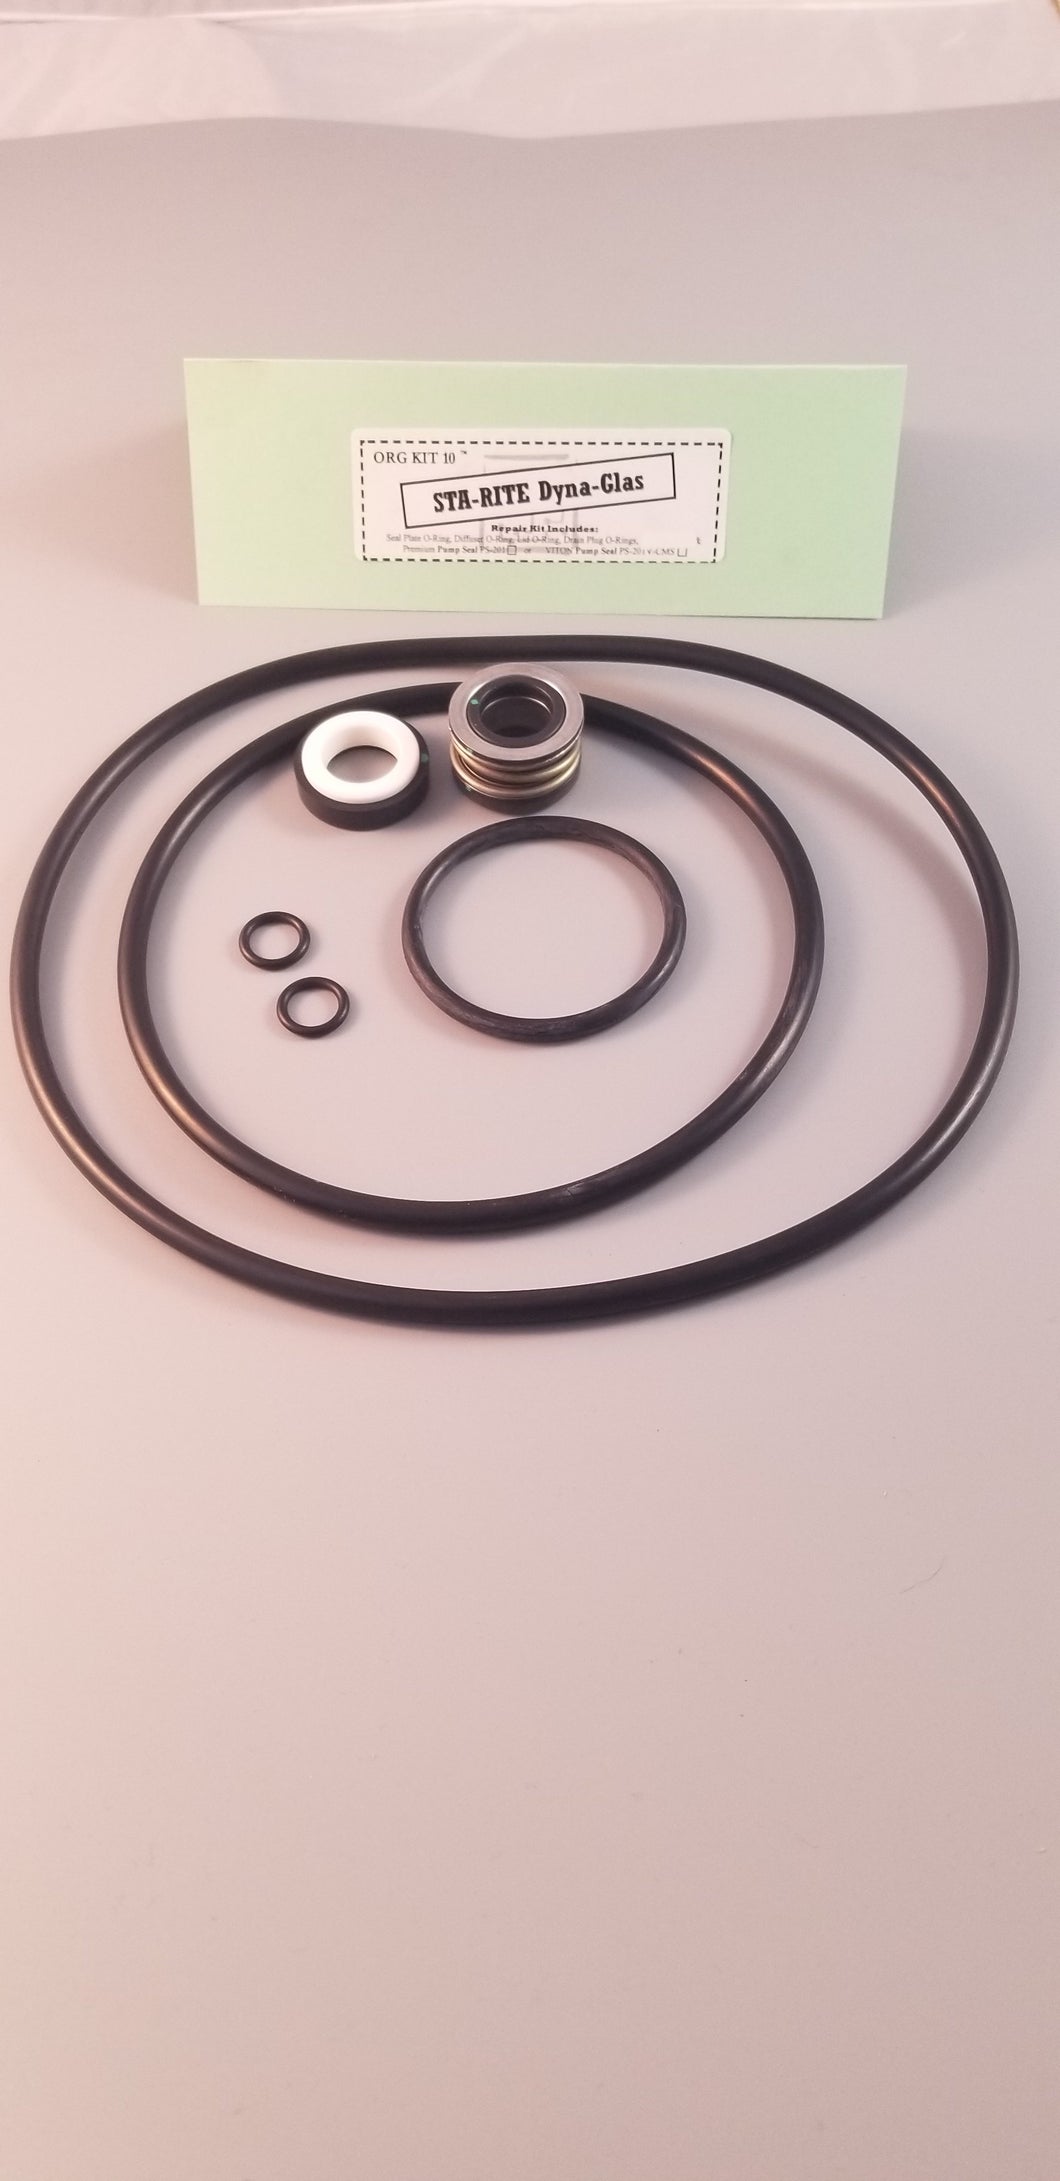 Dynaglas O-ring/Gasket/Viton Seal Kit